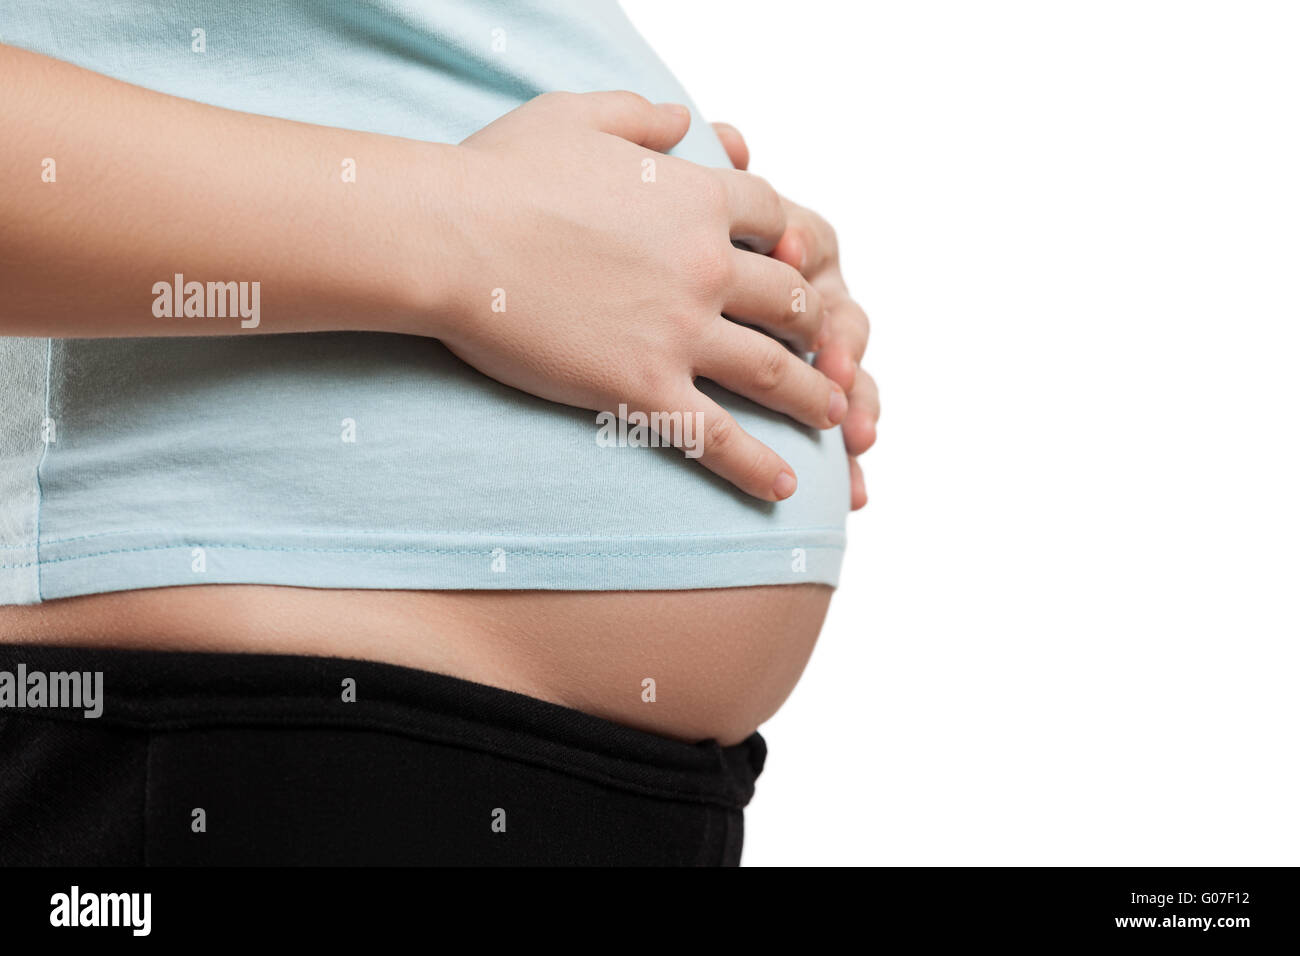 Pregnant woman touching or bonding her abdomen Stock Photo